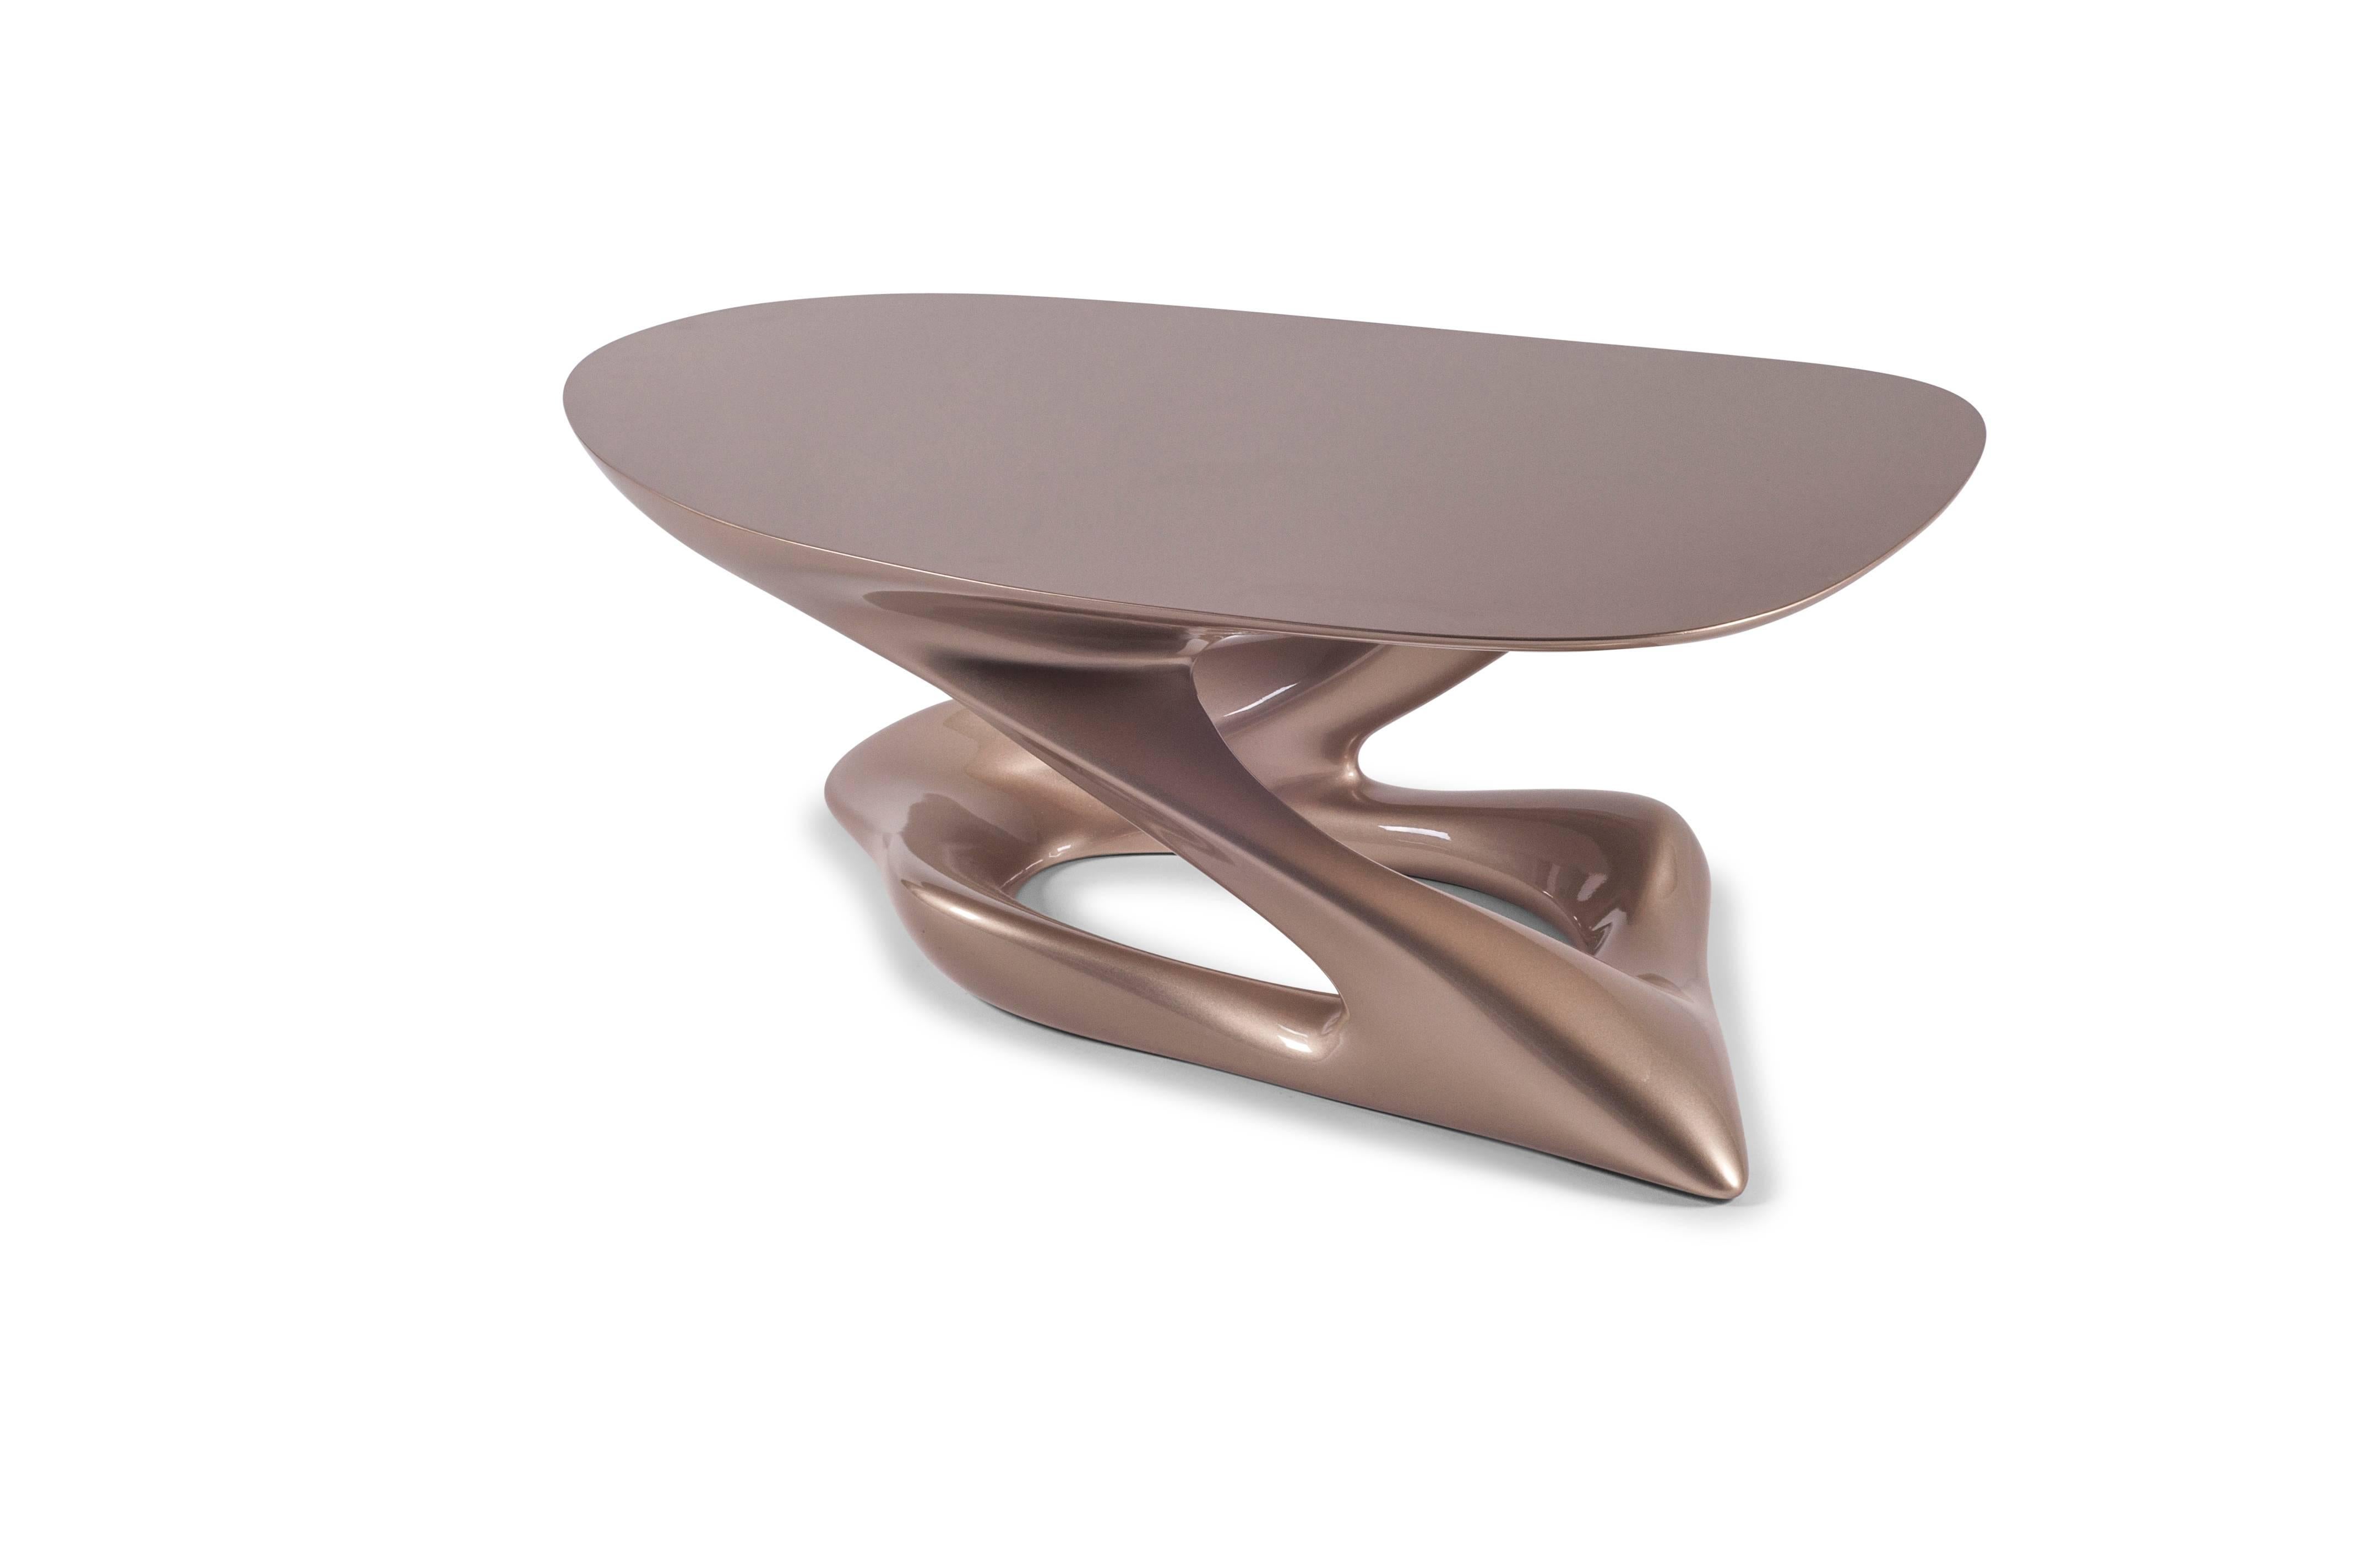 Der Plie Couchtisch ist ein stilvoller, futuristischer, skulpturaler Kunsttisch mit einer dynamischen Form, entworfen und hergestellt von Amorph. Plie ist aus massivem MDF mit Metallic-Lackierung gefertigt.

Über Amorph: 
Amorph ist ein Design- und